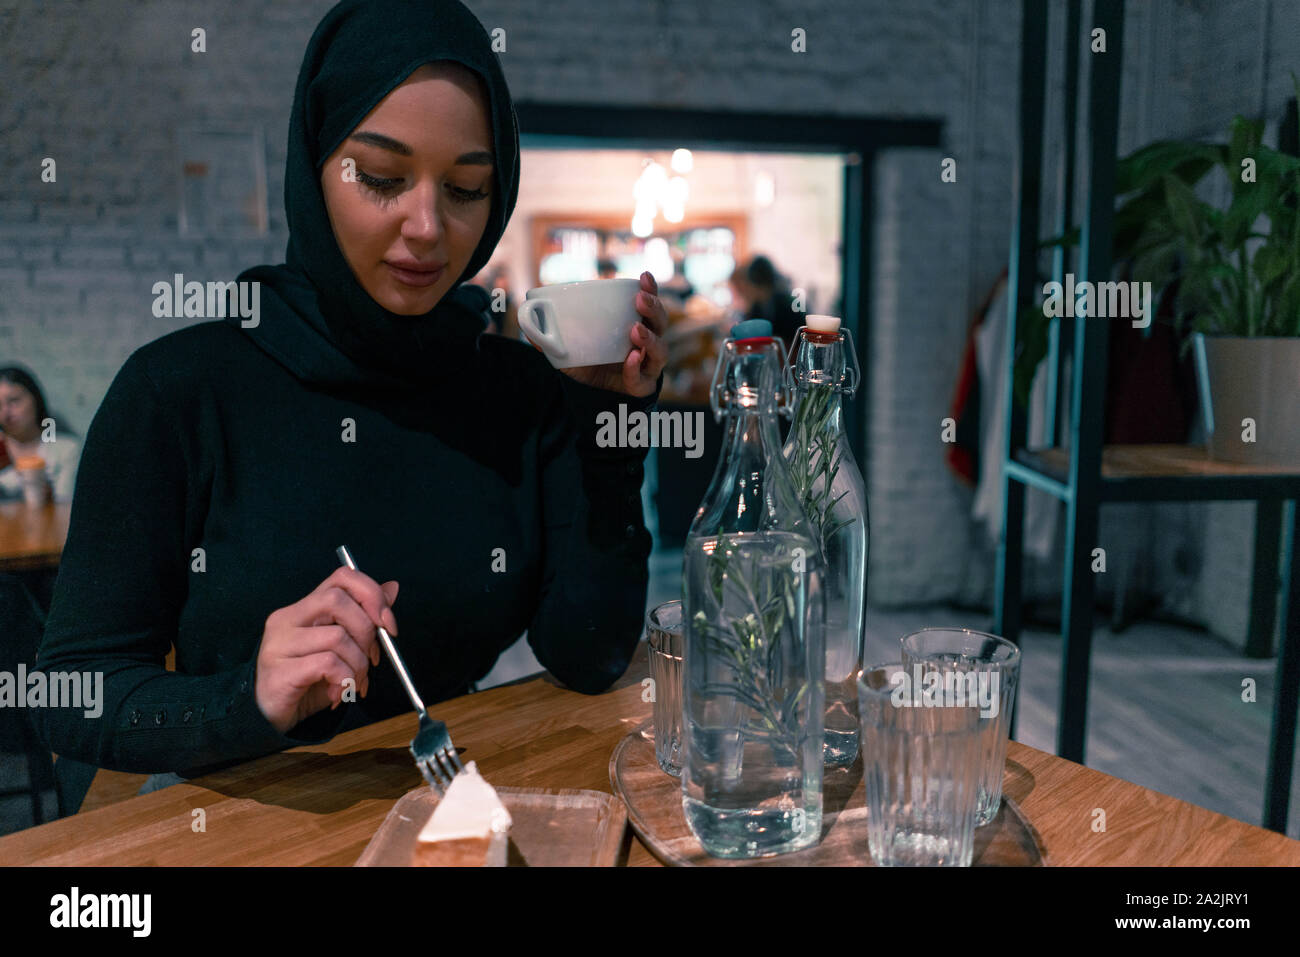 Muslimische Frau in der gemütlichen Cafe enjouing ihr Wochenende. Konzept der Lebens voller Leben mit modernen Haltung von tolerierbaren Gesellschaft. Aktiven Lebensstil Stockfoto